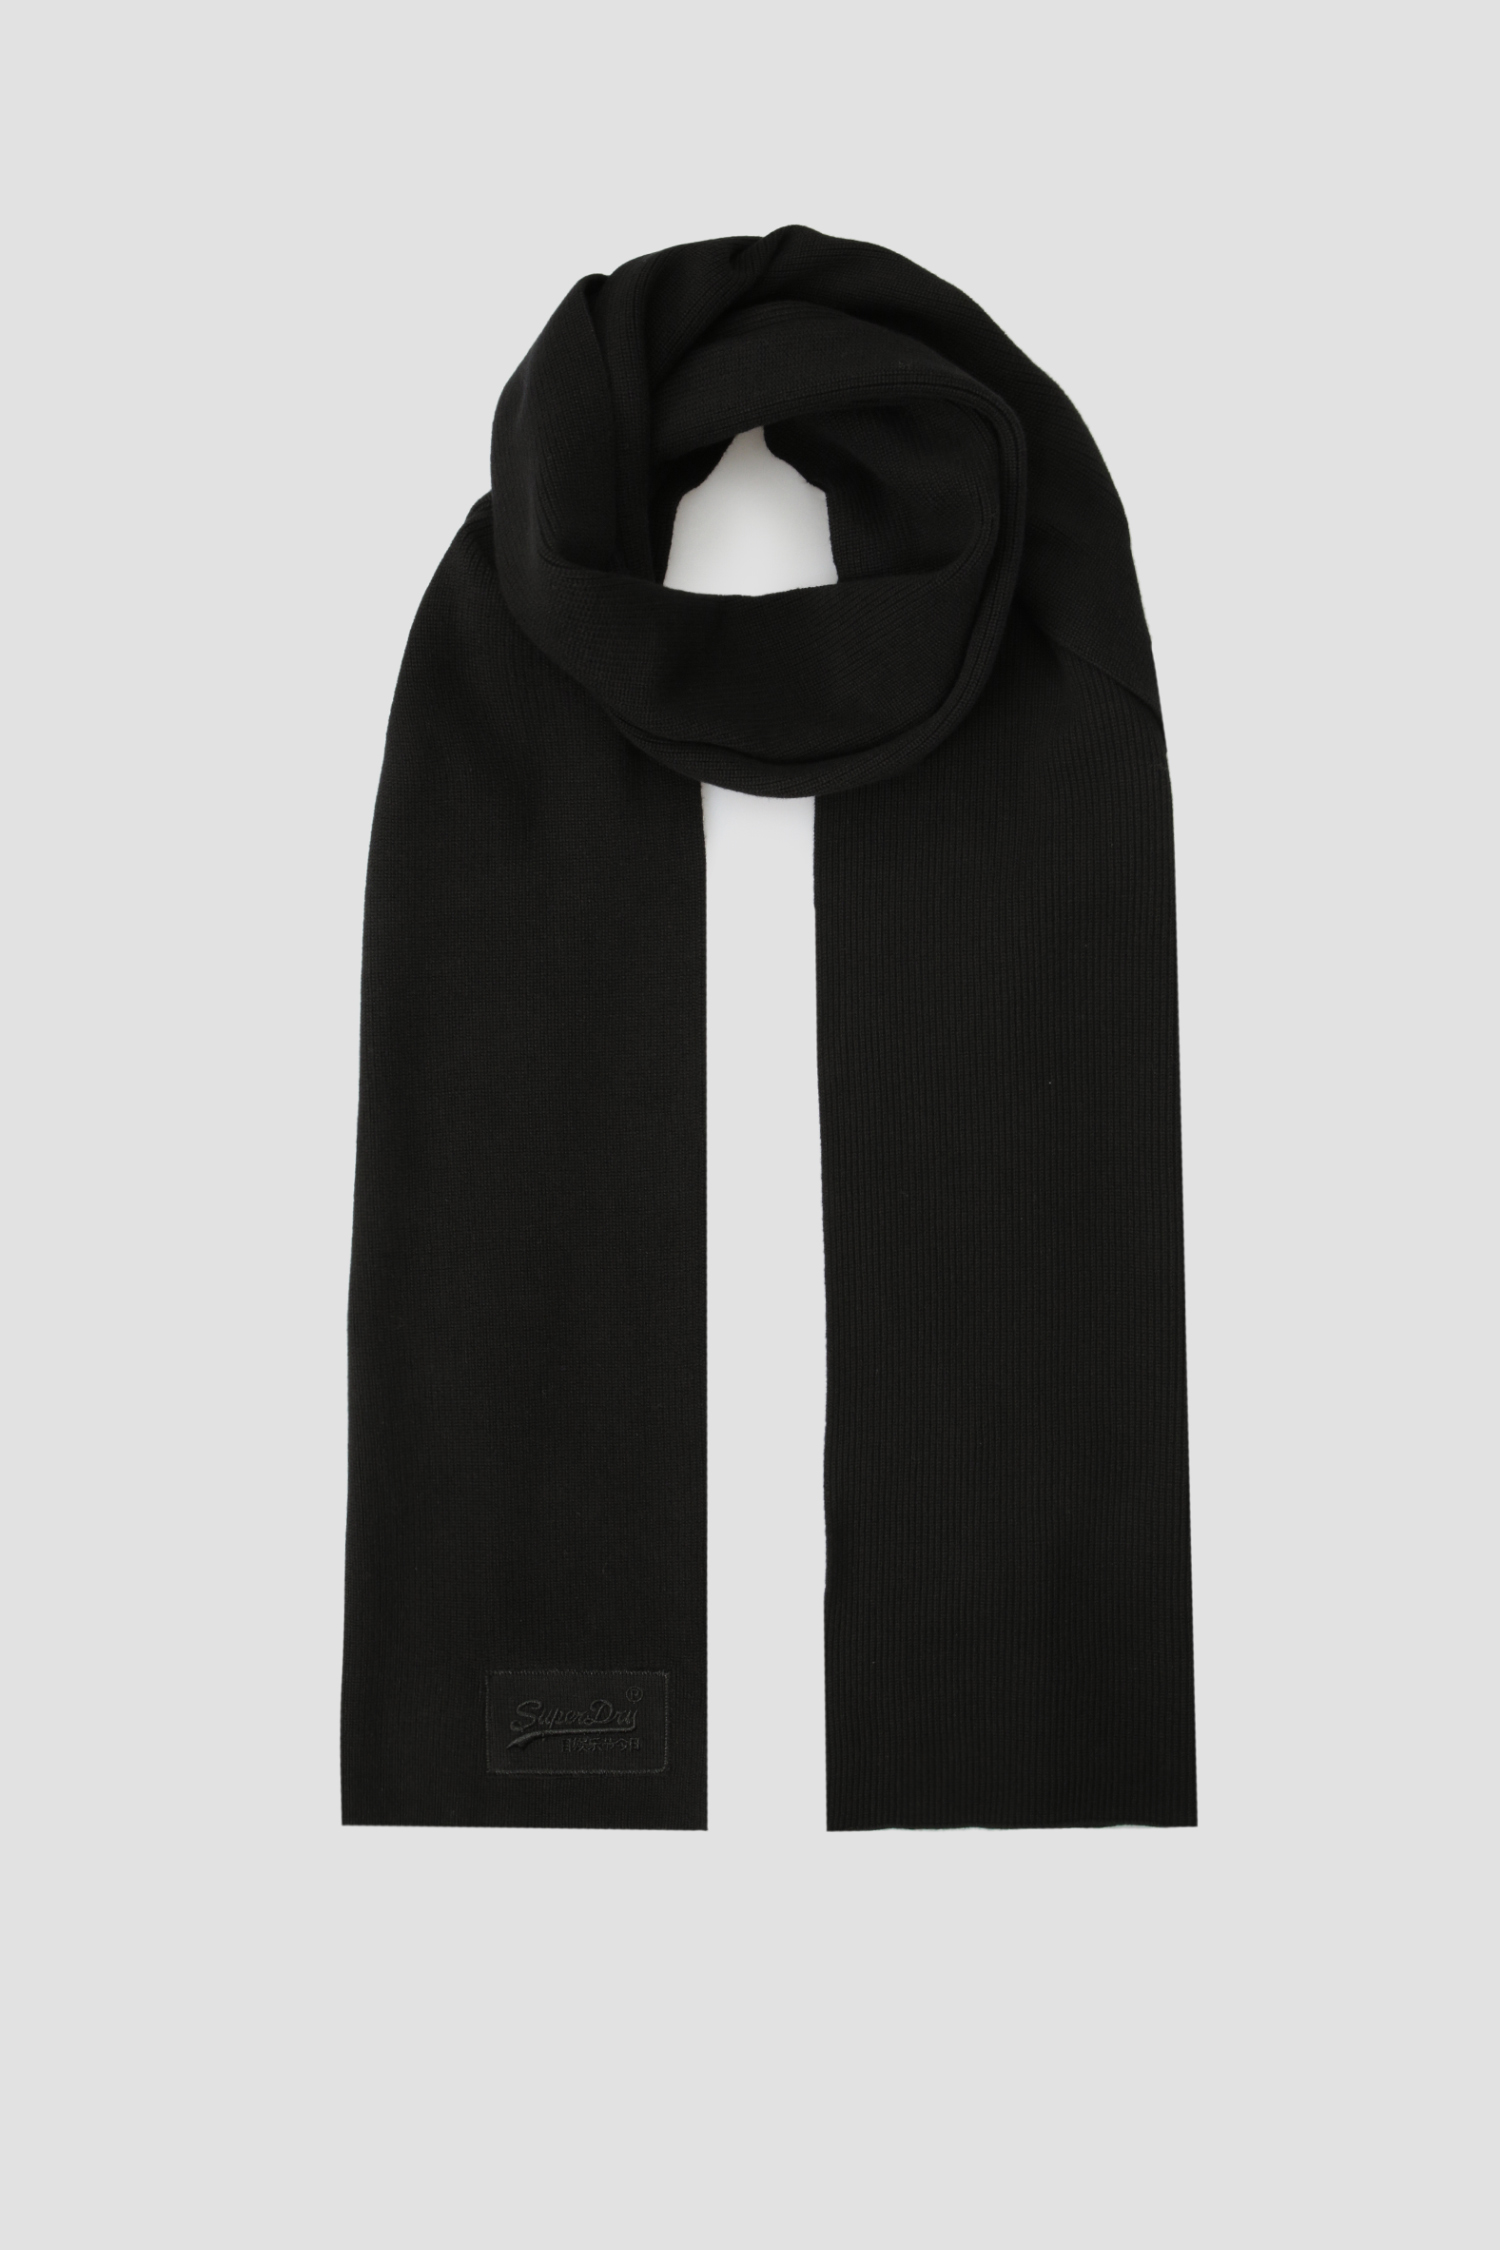 Черный шарф для парней SuperDry M9310010A;02A